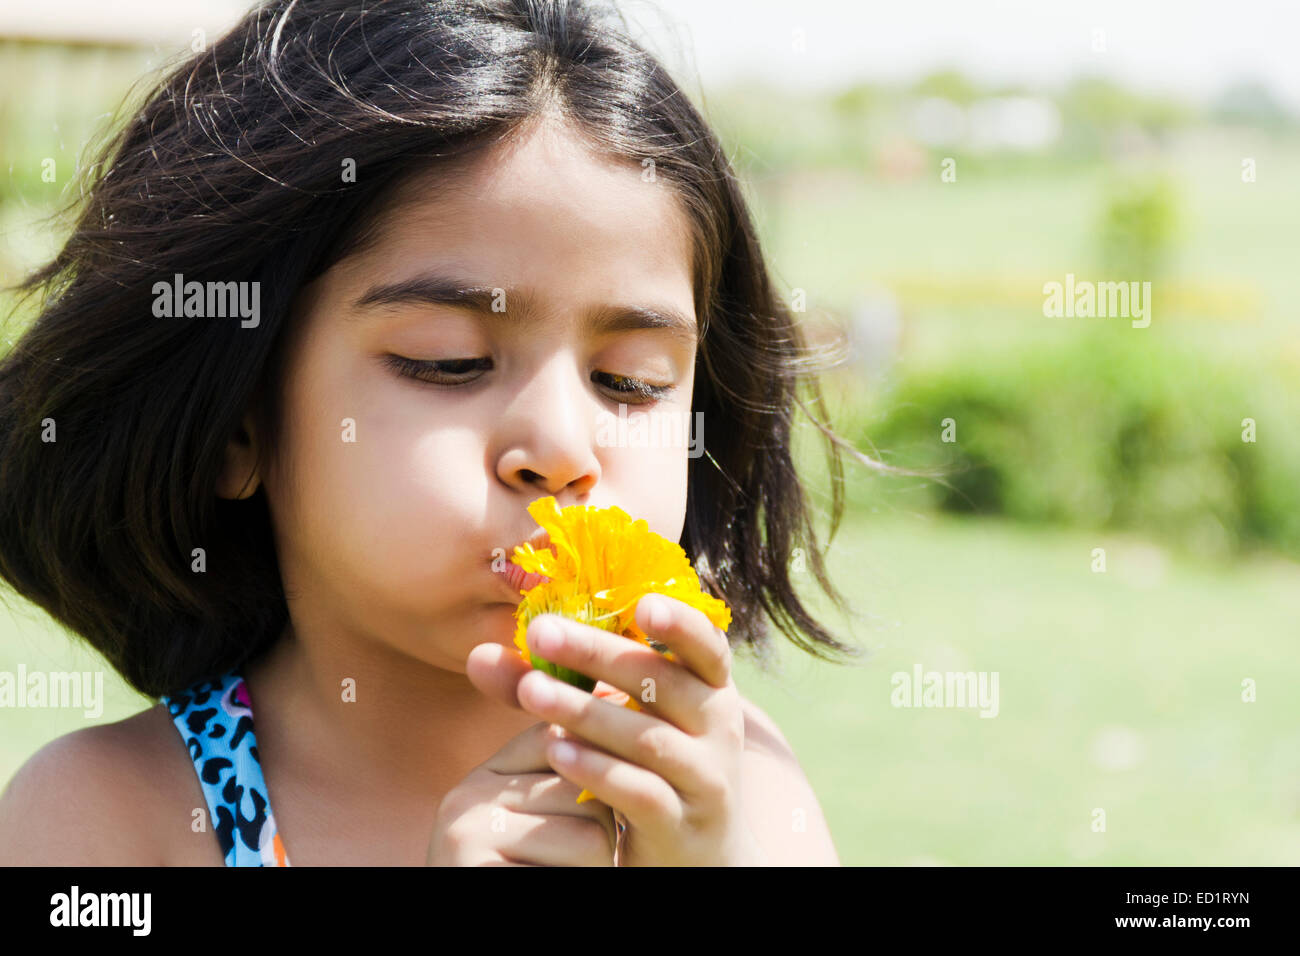 1 indians Beautifu Child girl park enjoy Stock Photo